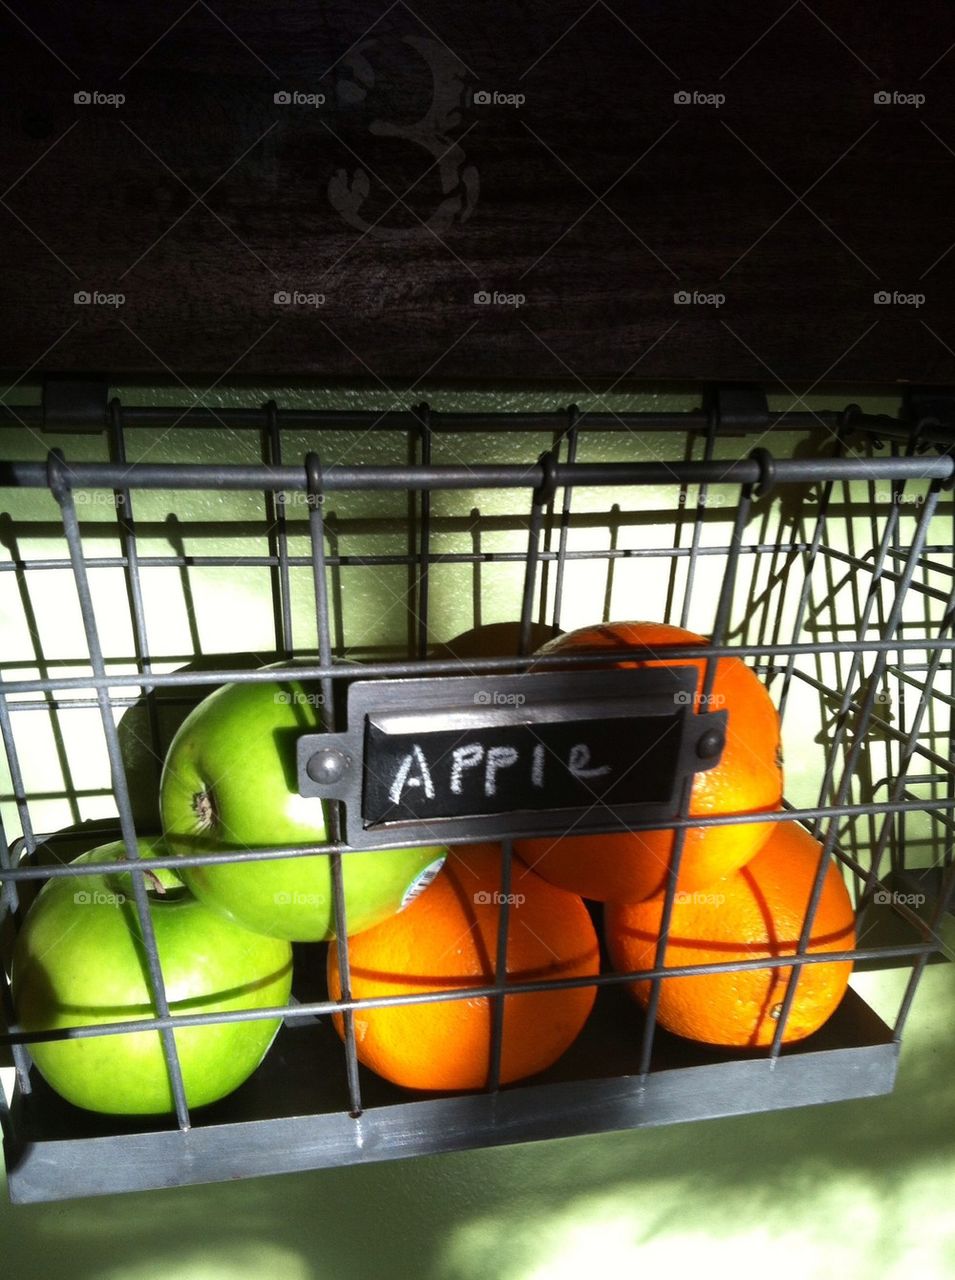 Apple Oranges